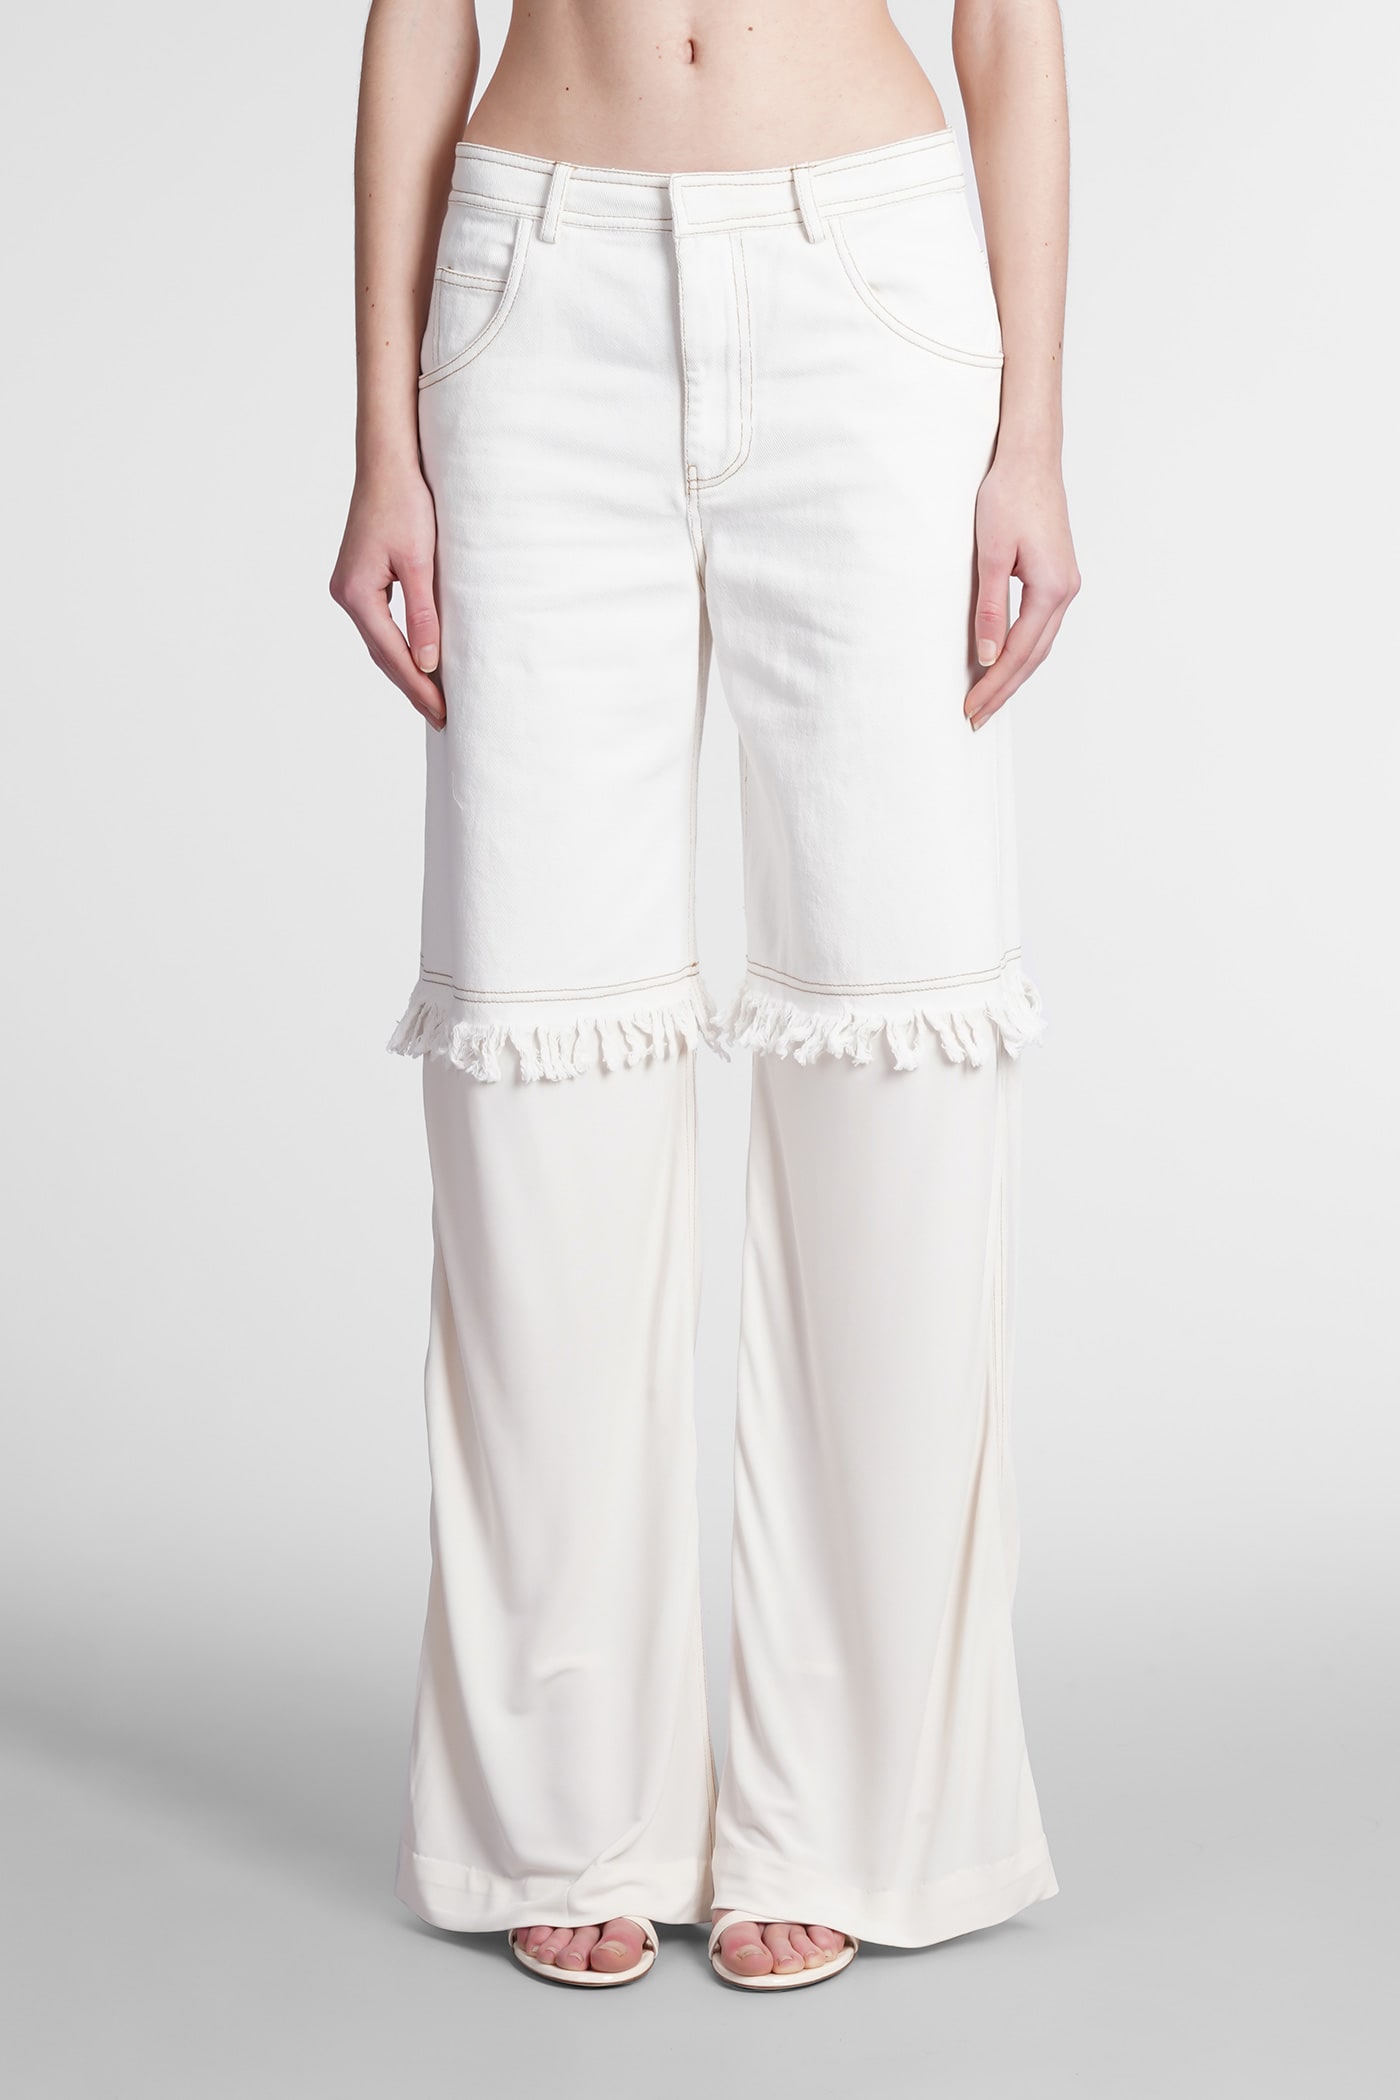 Christopher Esber Jeans In White Denim